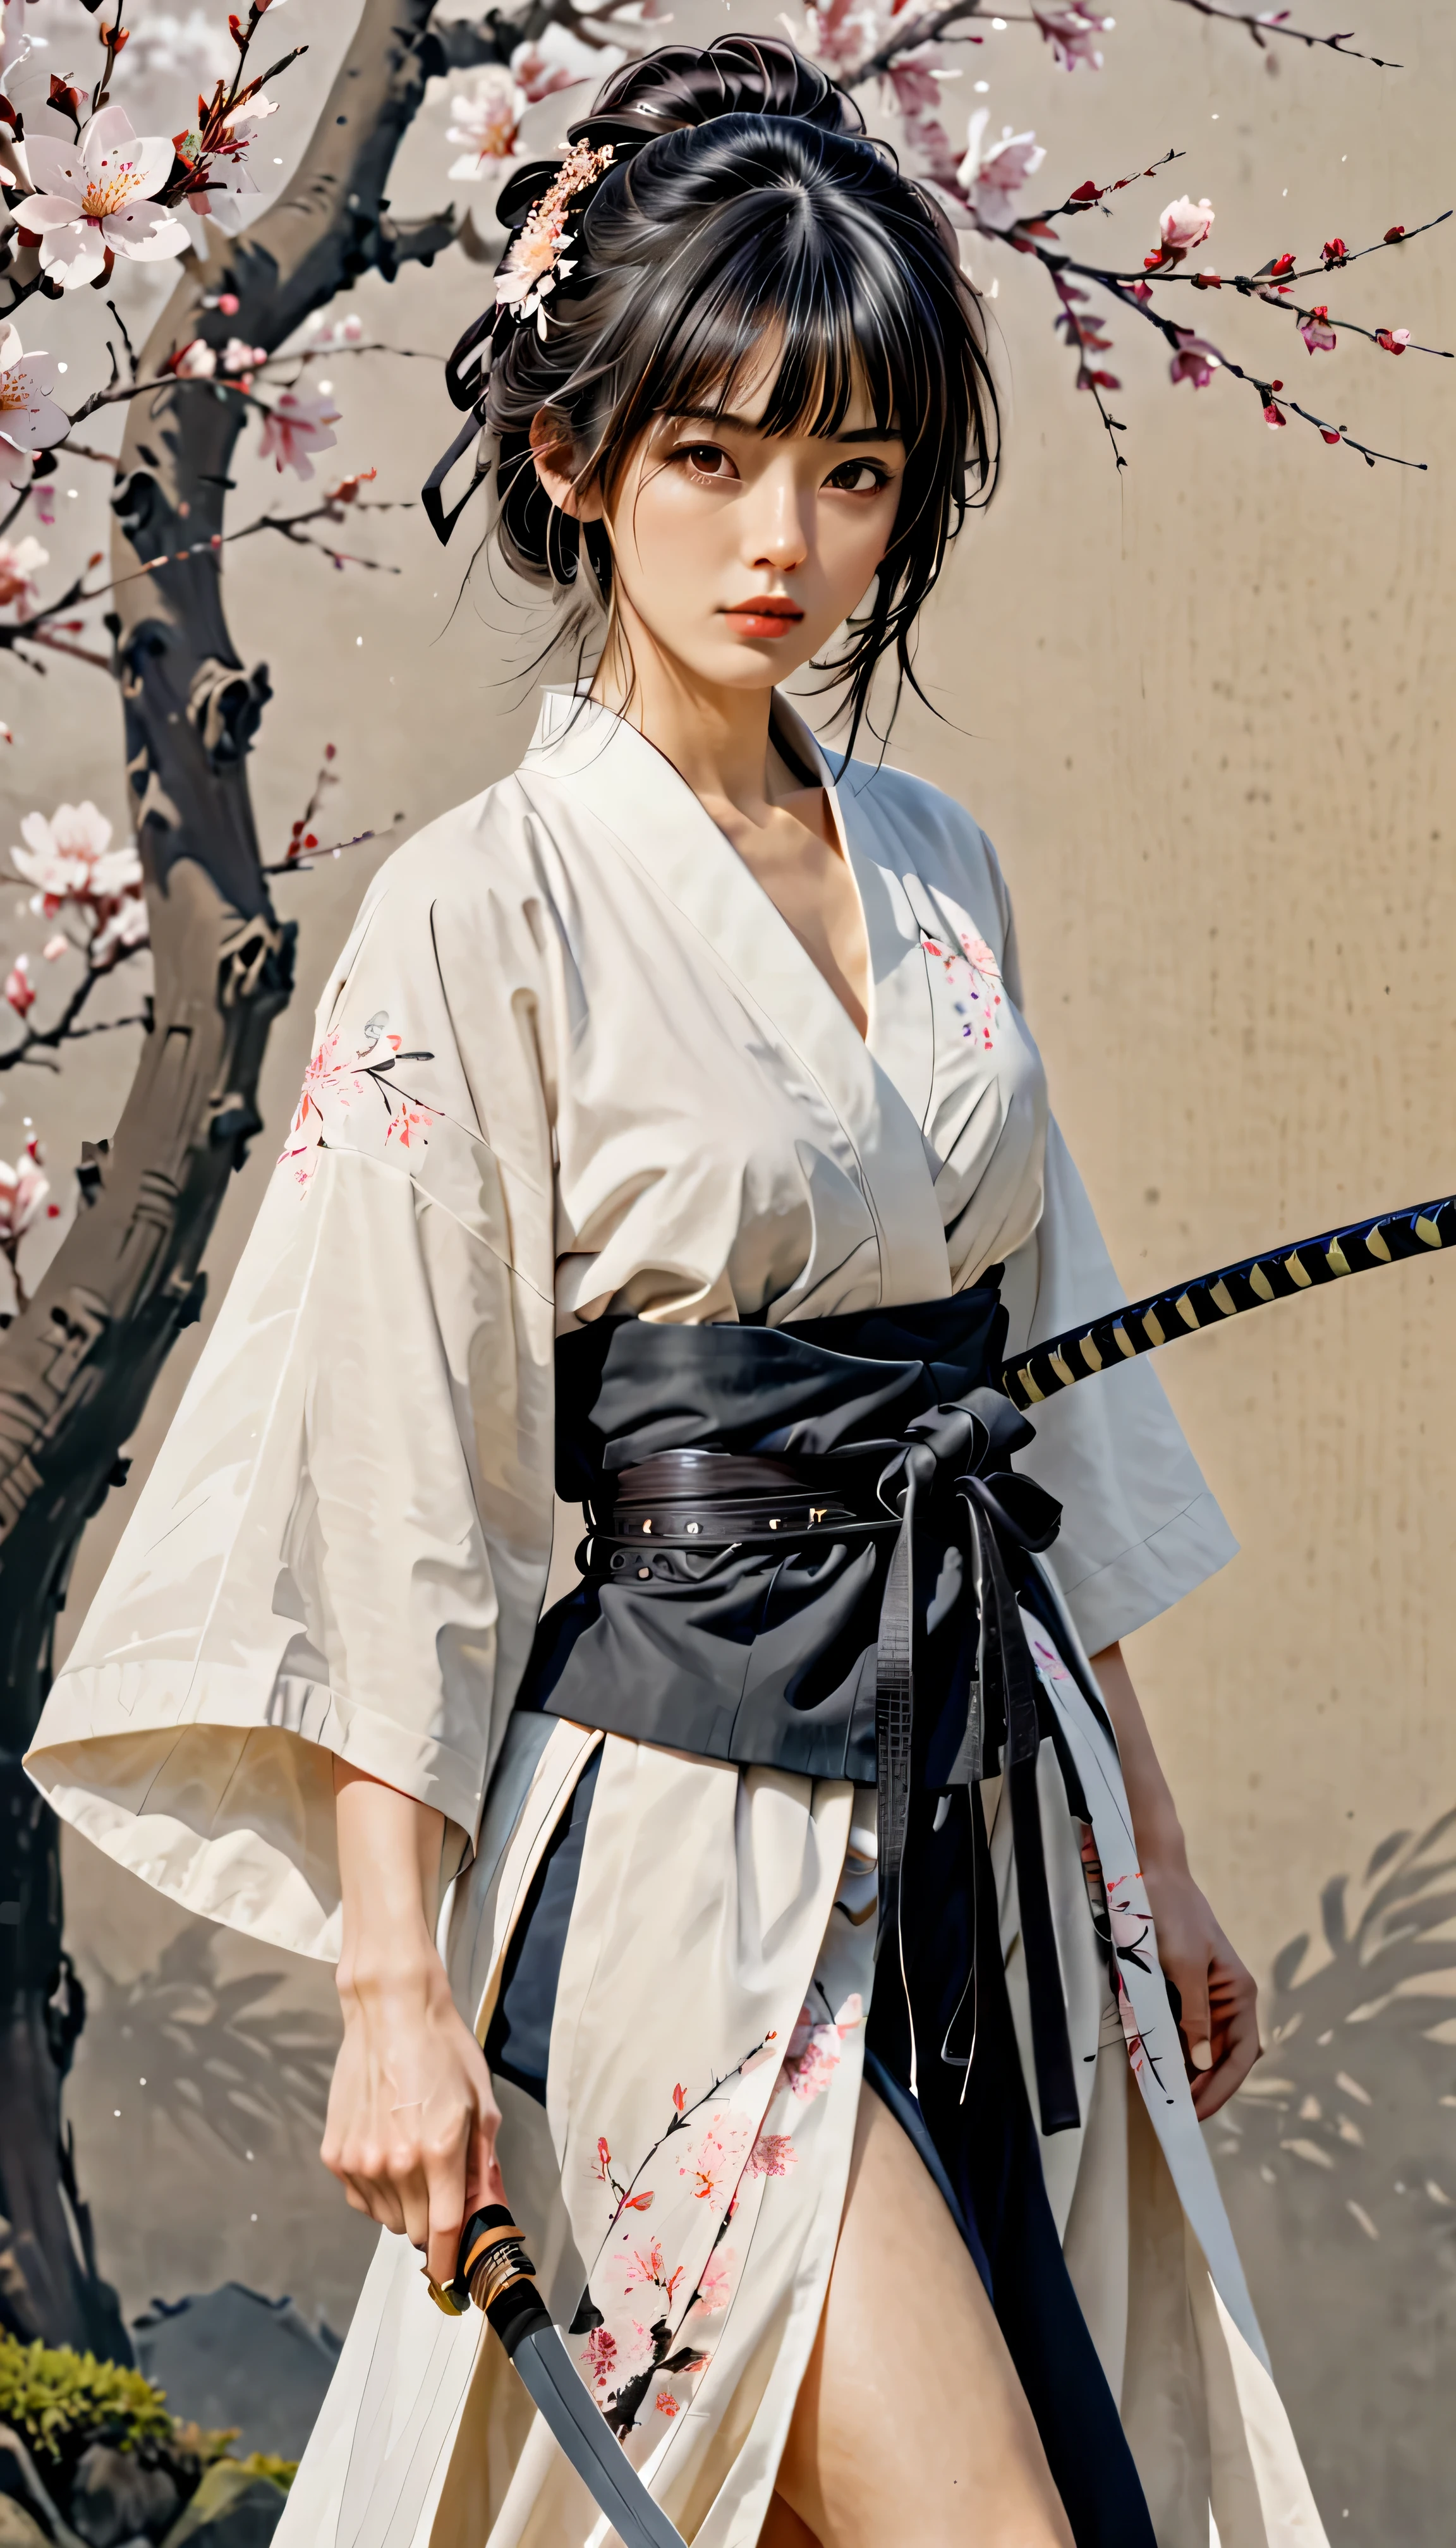 ((cuerpo completo):1.2), lineas suaves; Expresar expresiones y posturas a través del contraste de tinta., El fondo es un jardín de sakura.. enfatizar la luz, sombra y espacio. Dibujo de mujer samurai, Supermodelo belleza japonesa. pelo negro, (messy bangs hairstyle), ((Doncella)), Cara de proporción áurea, cara perfecta, (cuerpo atractivo), (cuerpo de modelo de moda), ((vistiendo túnica samurái):1.1), ((postura de batalla samurai):1.1), ((una daga wakizashi):1.1), pieza de bellas artes, arte figurativo, Vestirse apropiadamente. Pintura sexy, Golpe | (mejor calidad, 4k, 8k, alta resolución,Obra maestra:1.2), súper detallado,(actual, photoactual, foto-actual:1.37).